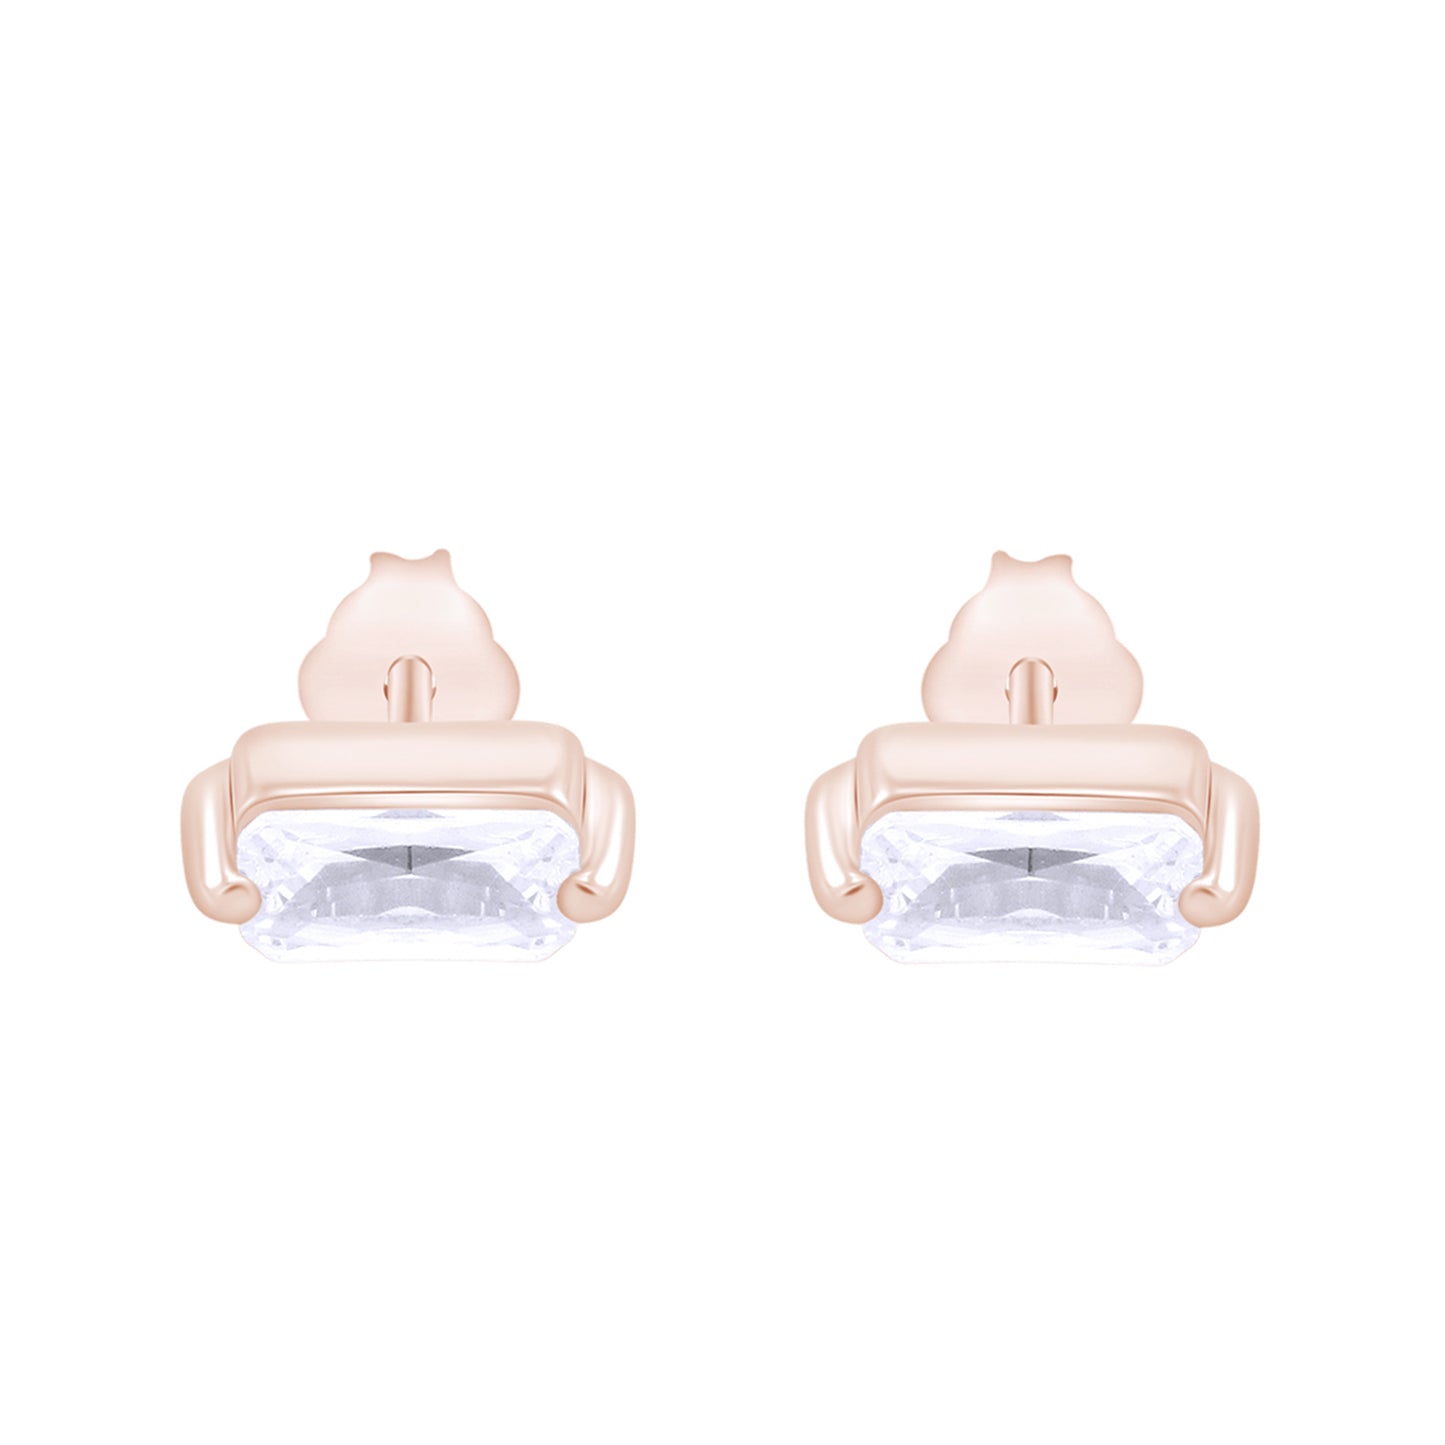 Baguette Cut White Cubic Zirconia Dainty Stud Earring For Women In 925 Sterling Silver